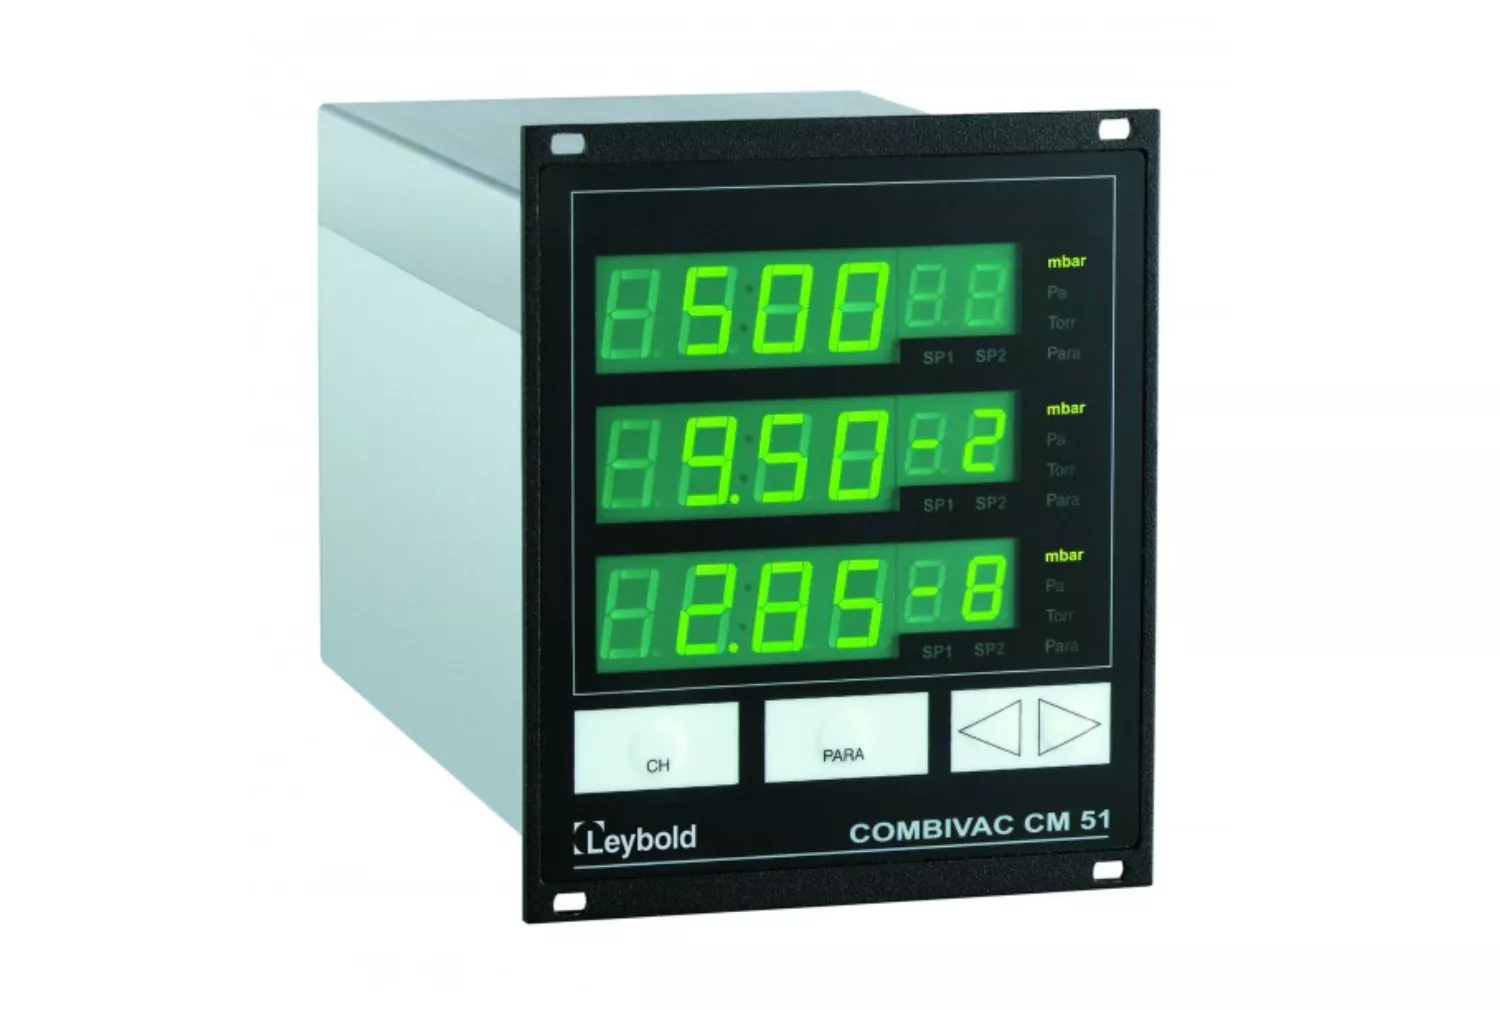 Купить в АО Вакууммаш ✓ Графический контроллер COMBIVAC CM 51 Leybold по цене производителя